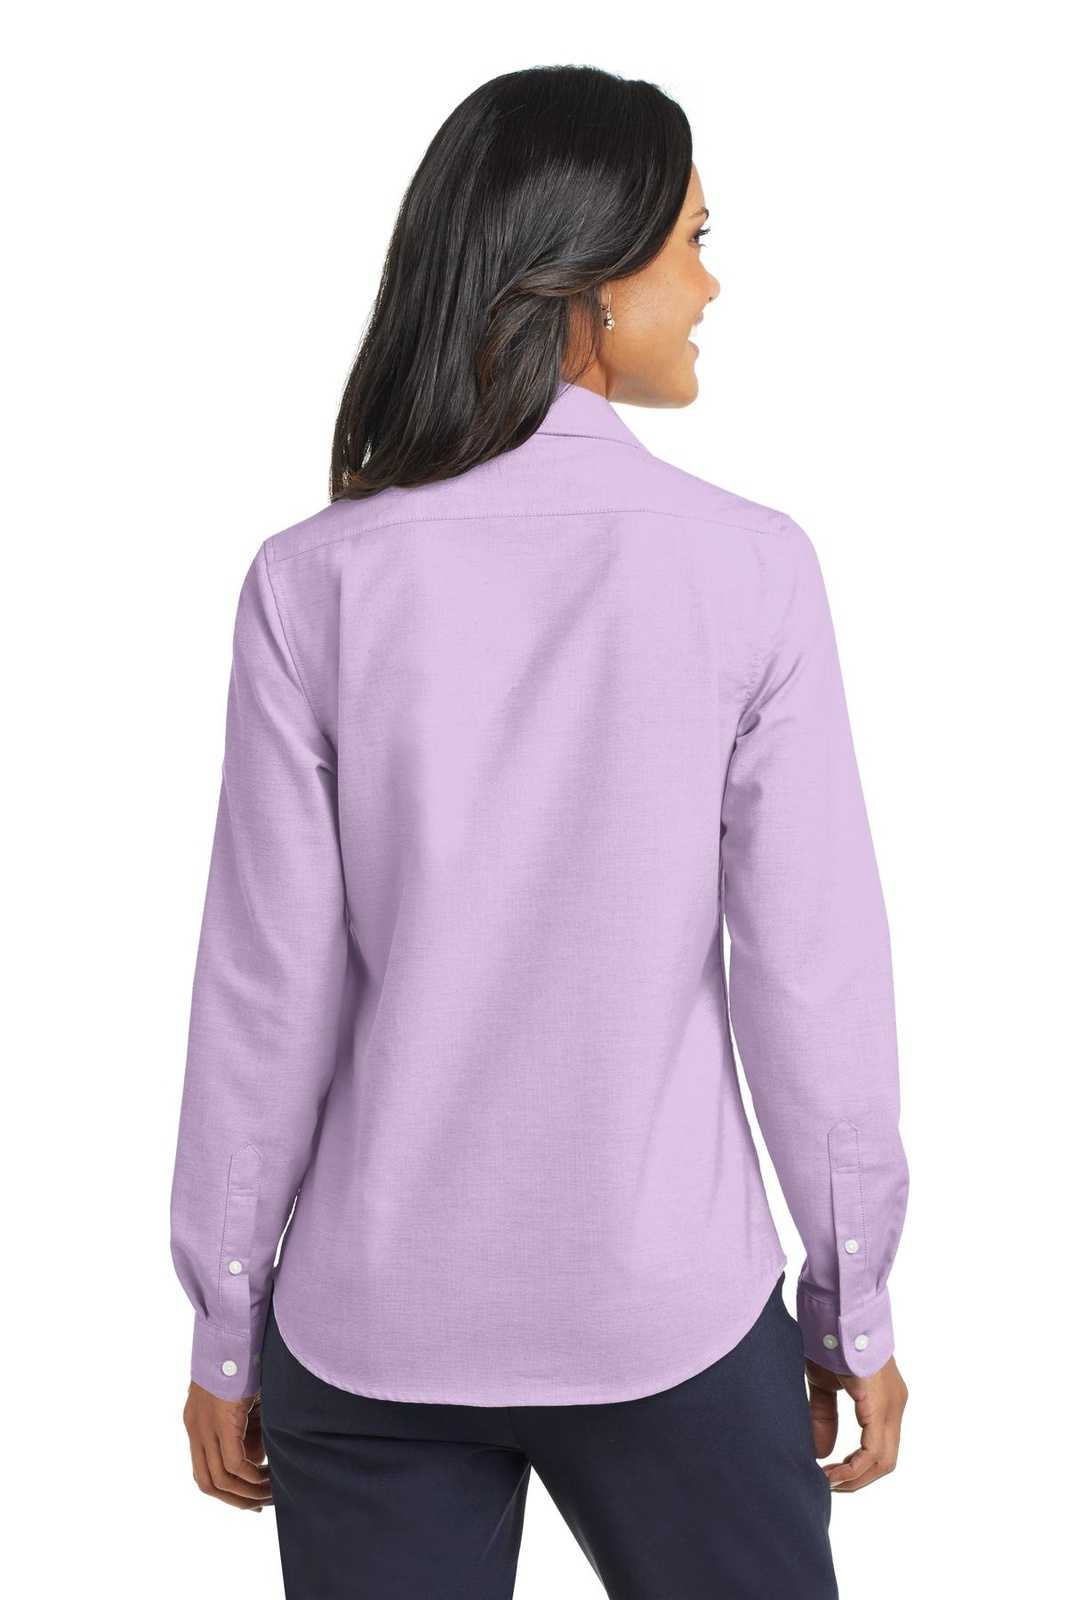 Port Authority L658 Ladies Superpro Oxford Shirt - Soft Purple - HIT a Double - 2